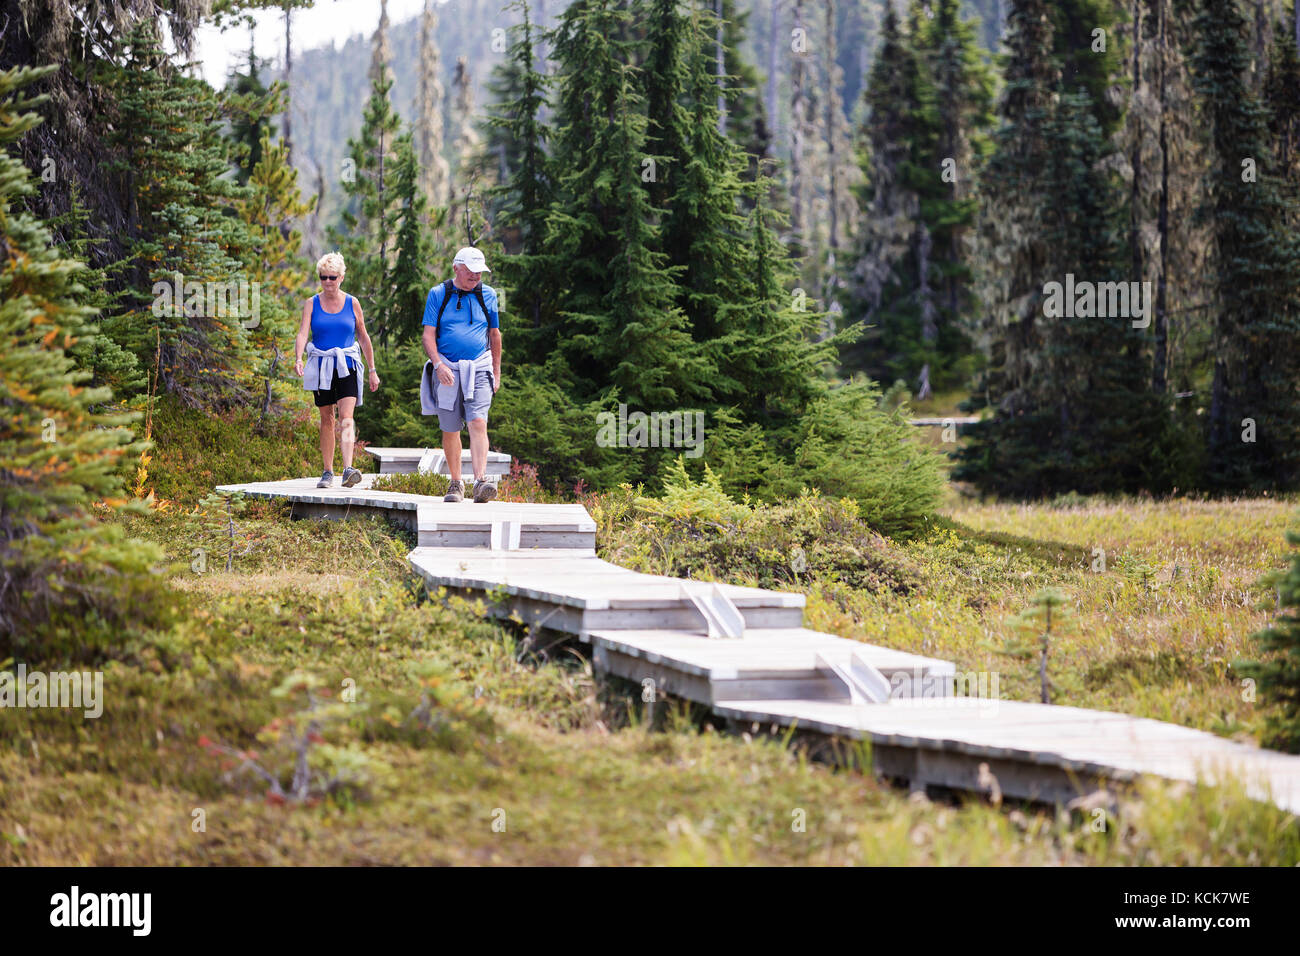 Un couple senior marche le long d'une série de promenades en bois, construites pour les randonneurs de jour explorant Paradise Meadows près de Mt. Washington. Paradise Meadows, Strathcona Park, île de Vancouver, Colombie-Britannique, Canada. Banque D'Images